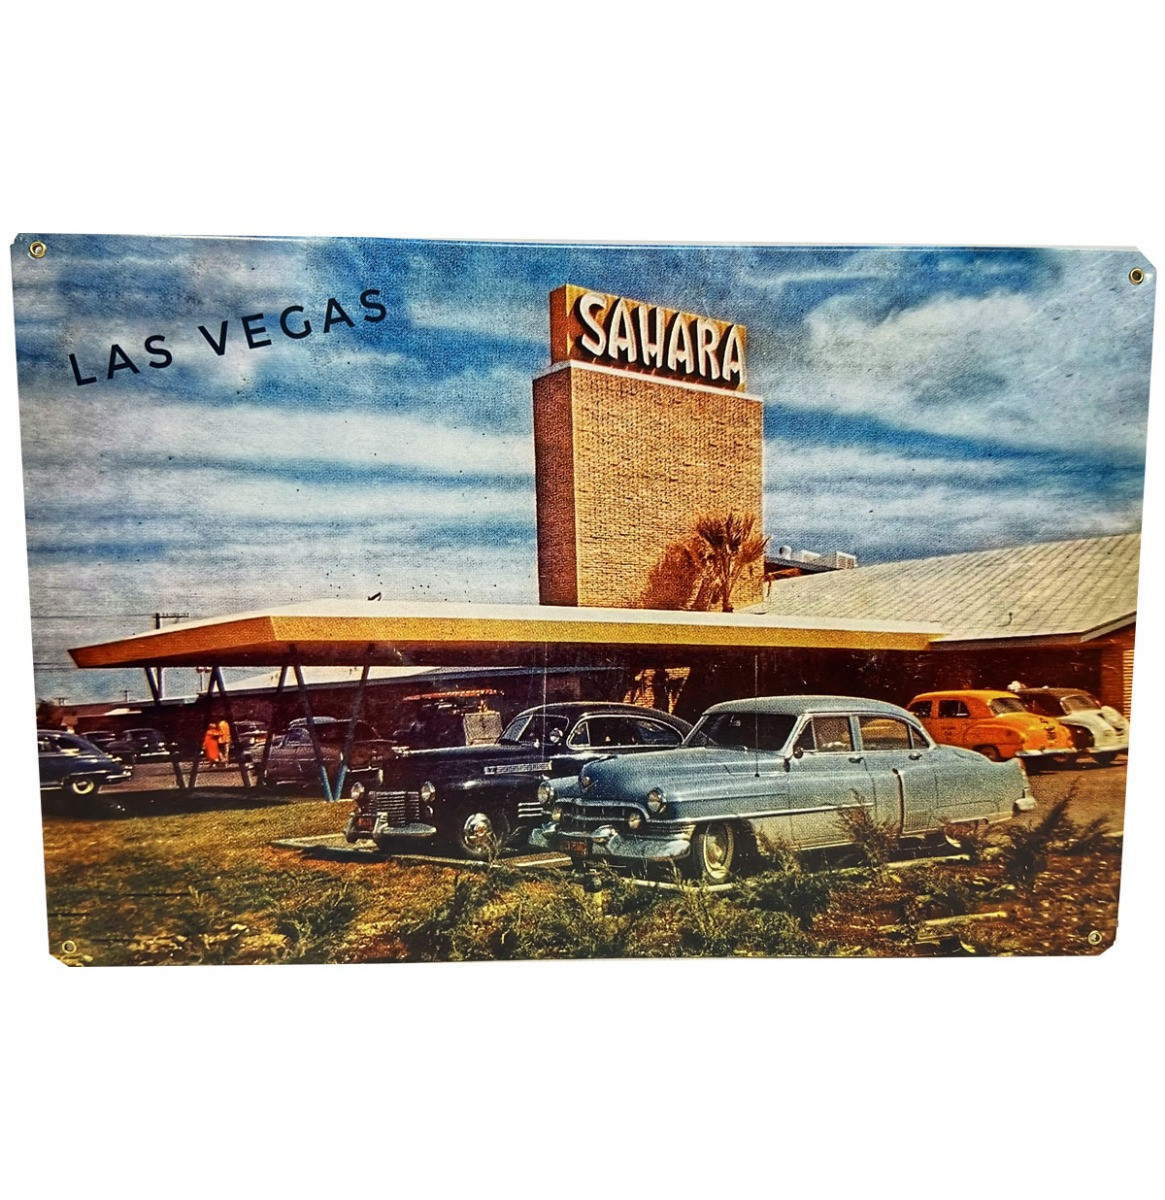 Las Vegas Sahara Metalen Bord 29.5 x 44.5 cm